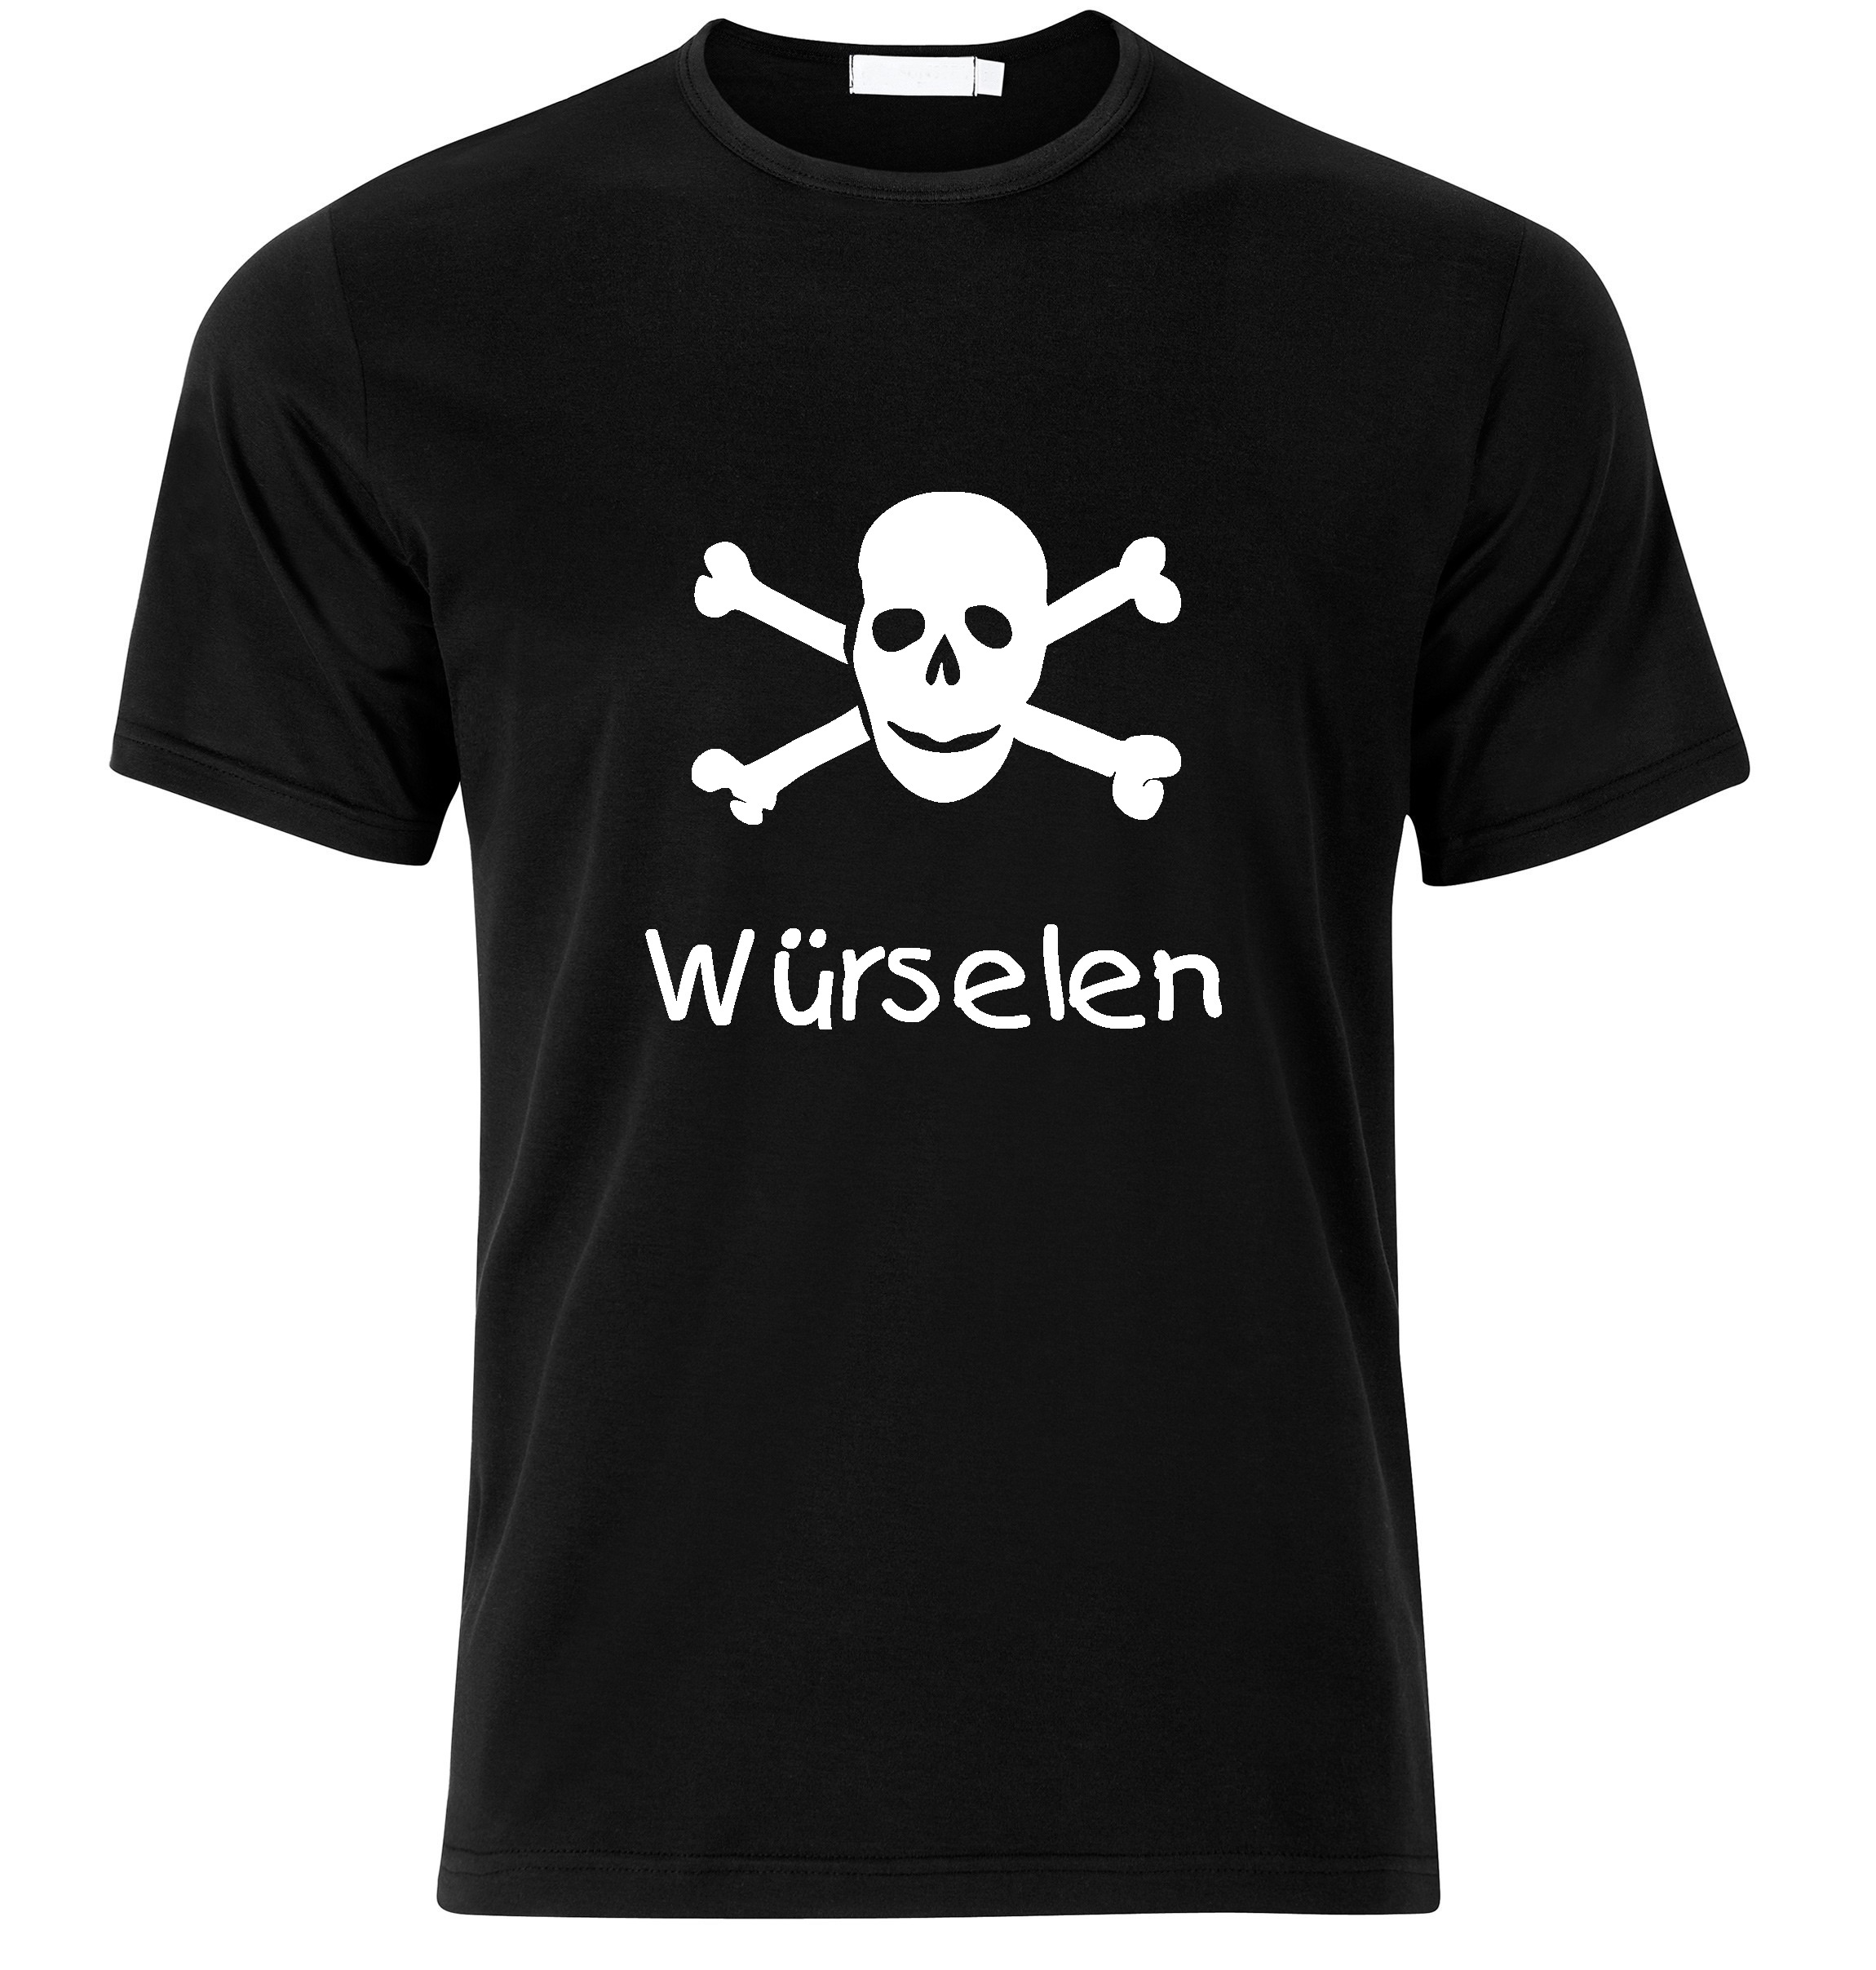 T-Shirt Würselen Jolly Roger, Totenkopf